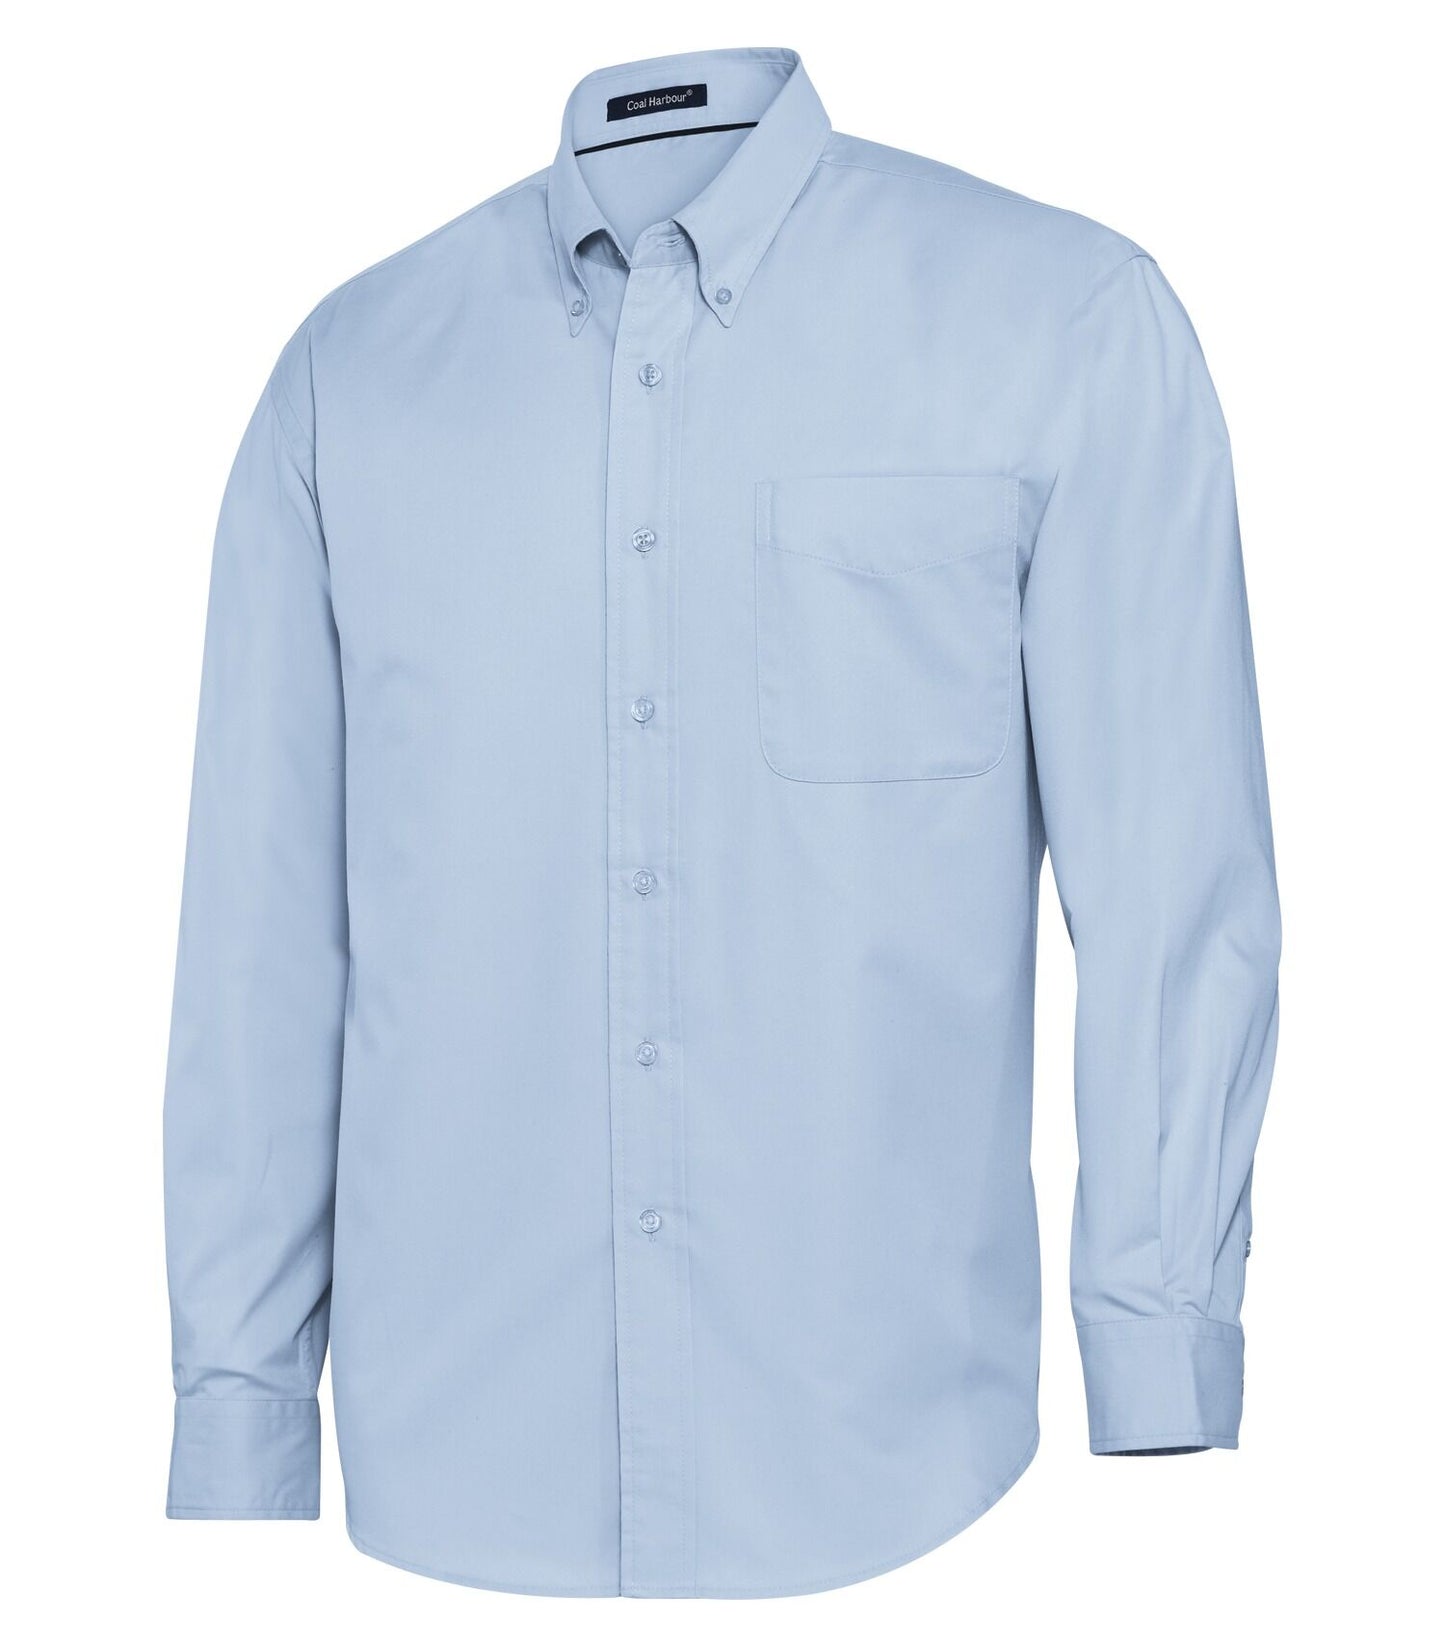 Kohle Harbour-D610 langarmes Hemd-Hemd Easy Care-Mischung für Männer